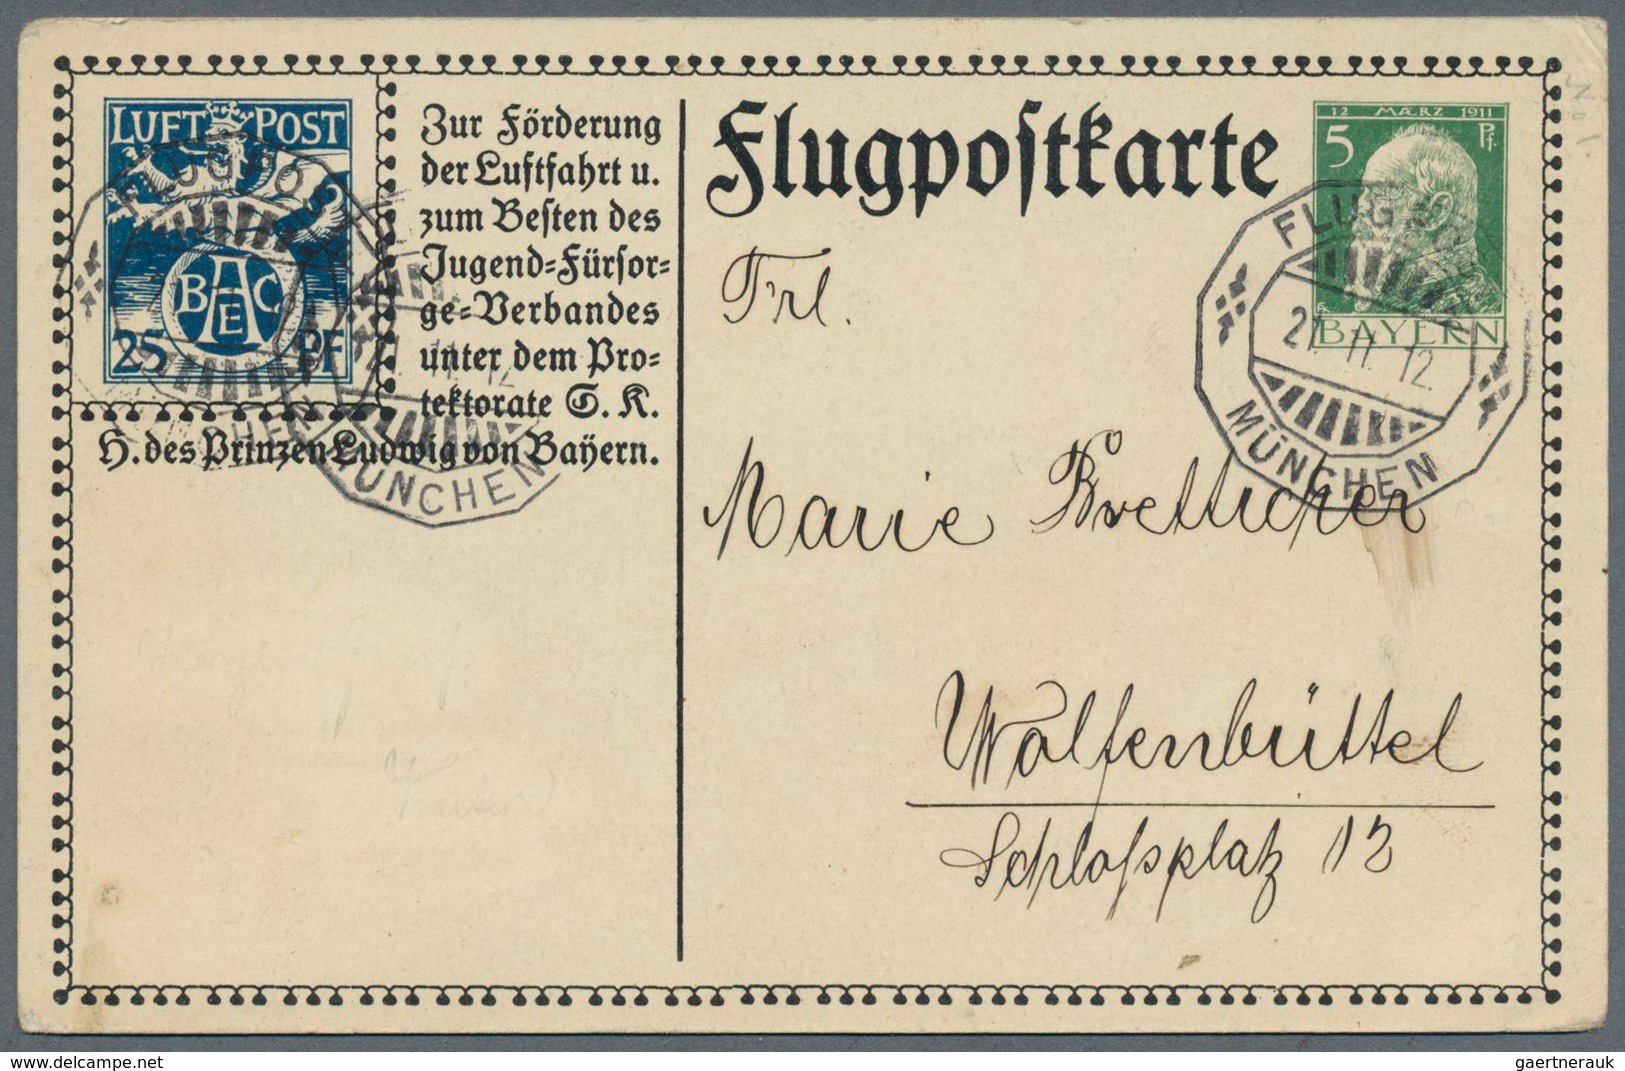 31226 Bayern - Ganzsachen: 1873/1920 ca., interessante Slg. mit ca.180 gebrauchten Ganzsachen, dabei Postk